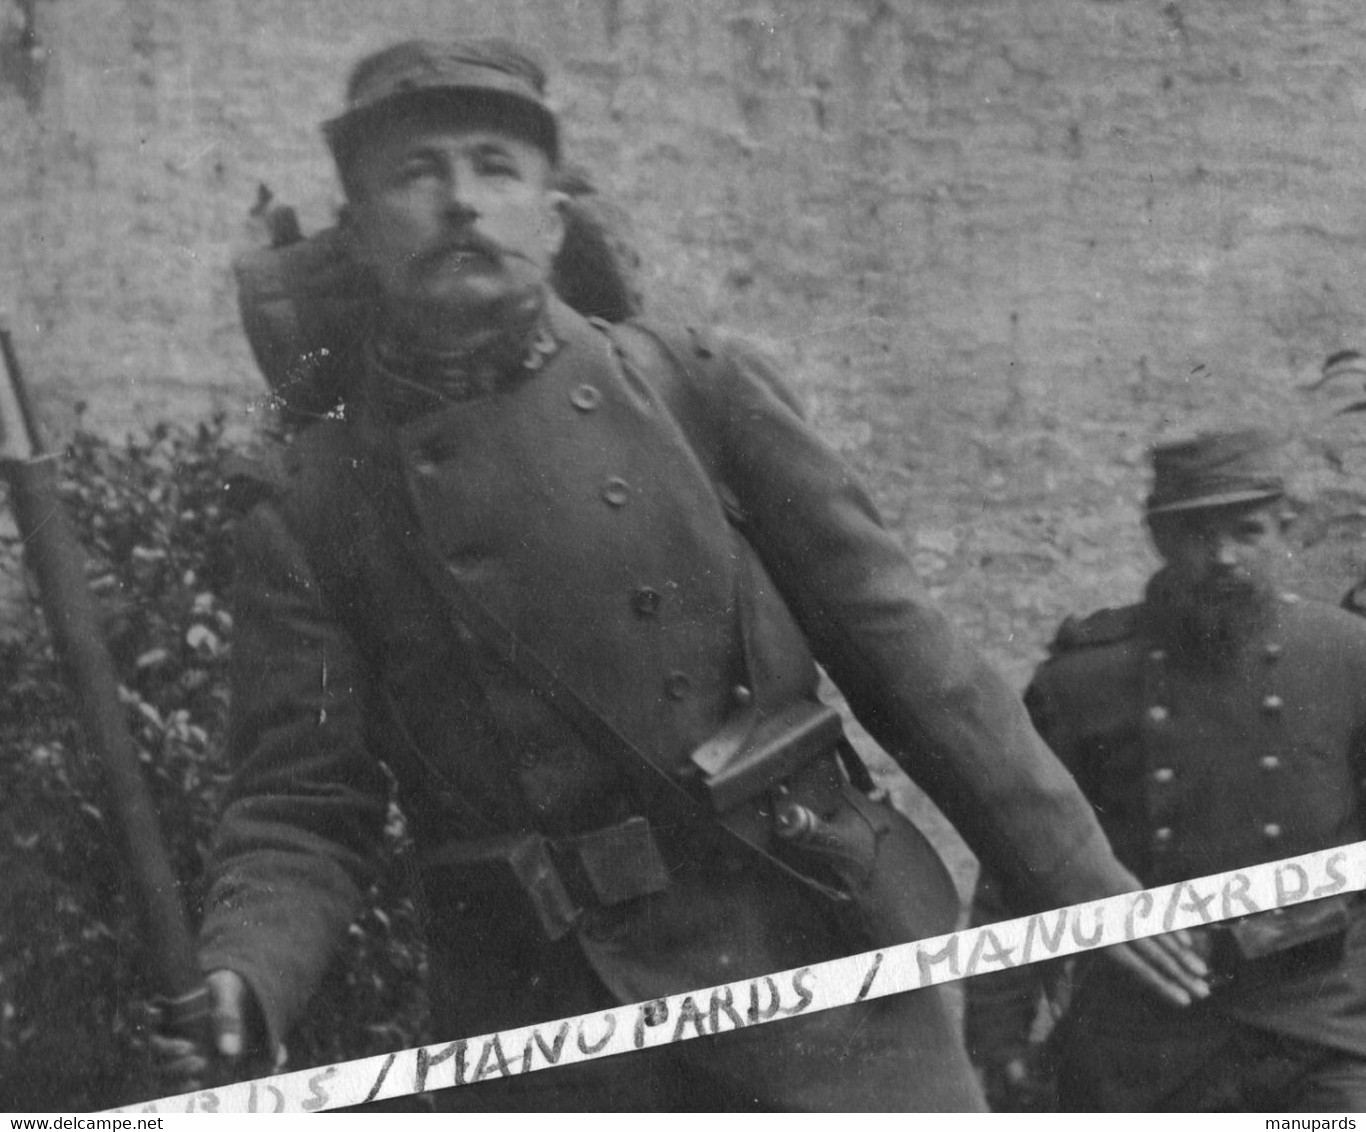 62 SAINT LAURENT BLANGY / CARTE PHOTO / 1915 /  SOLDATS FRANCAIS / TELEPHONISTE / REGIMENT D'INFANTERIE TERR../ POILUS - Saint Laurent Blangy